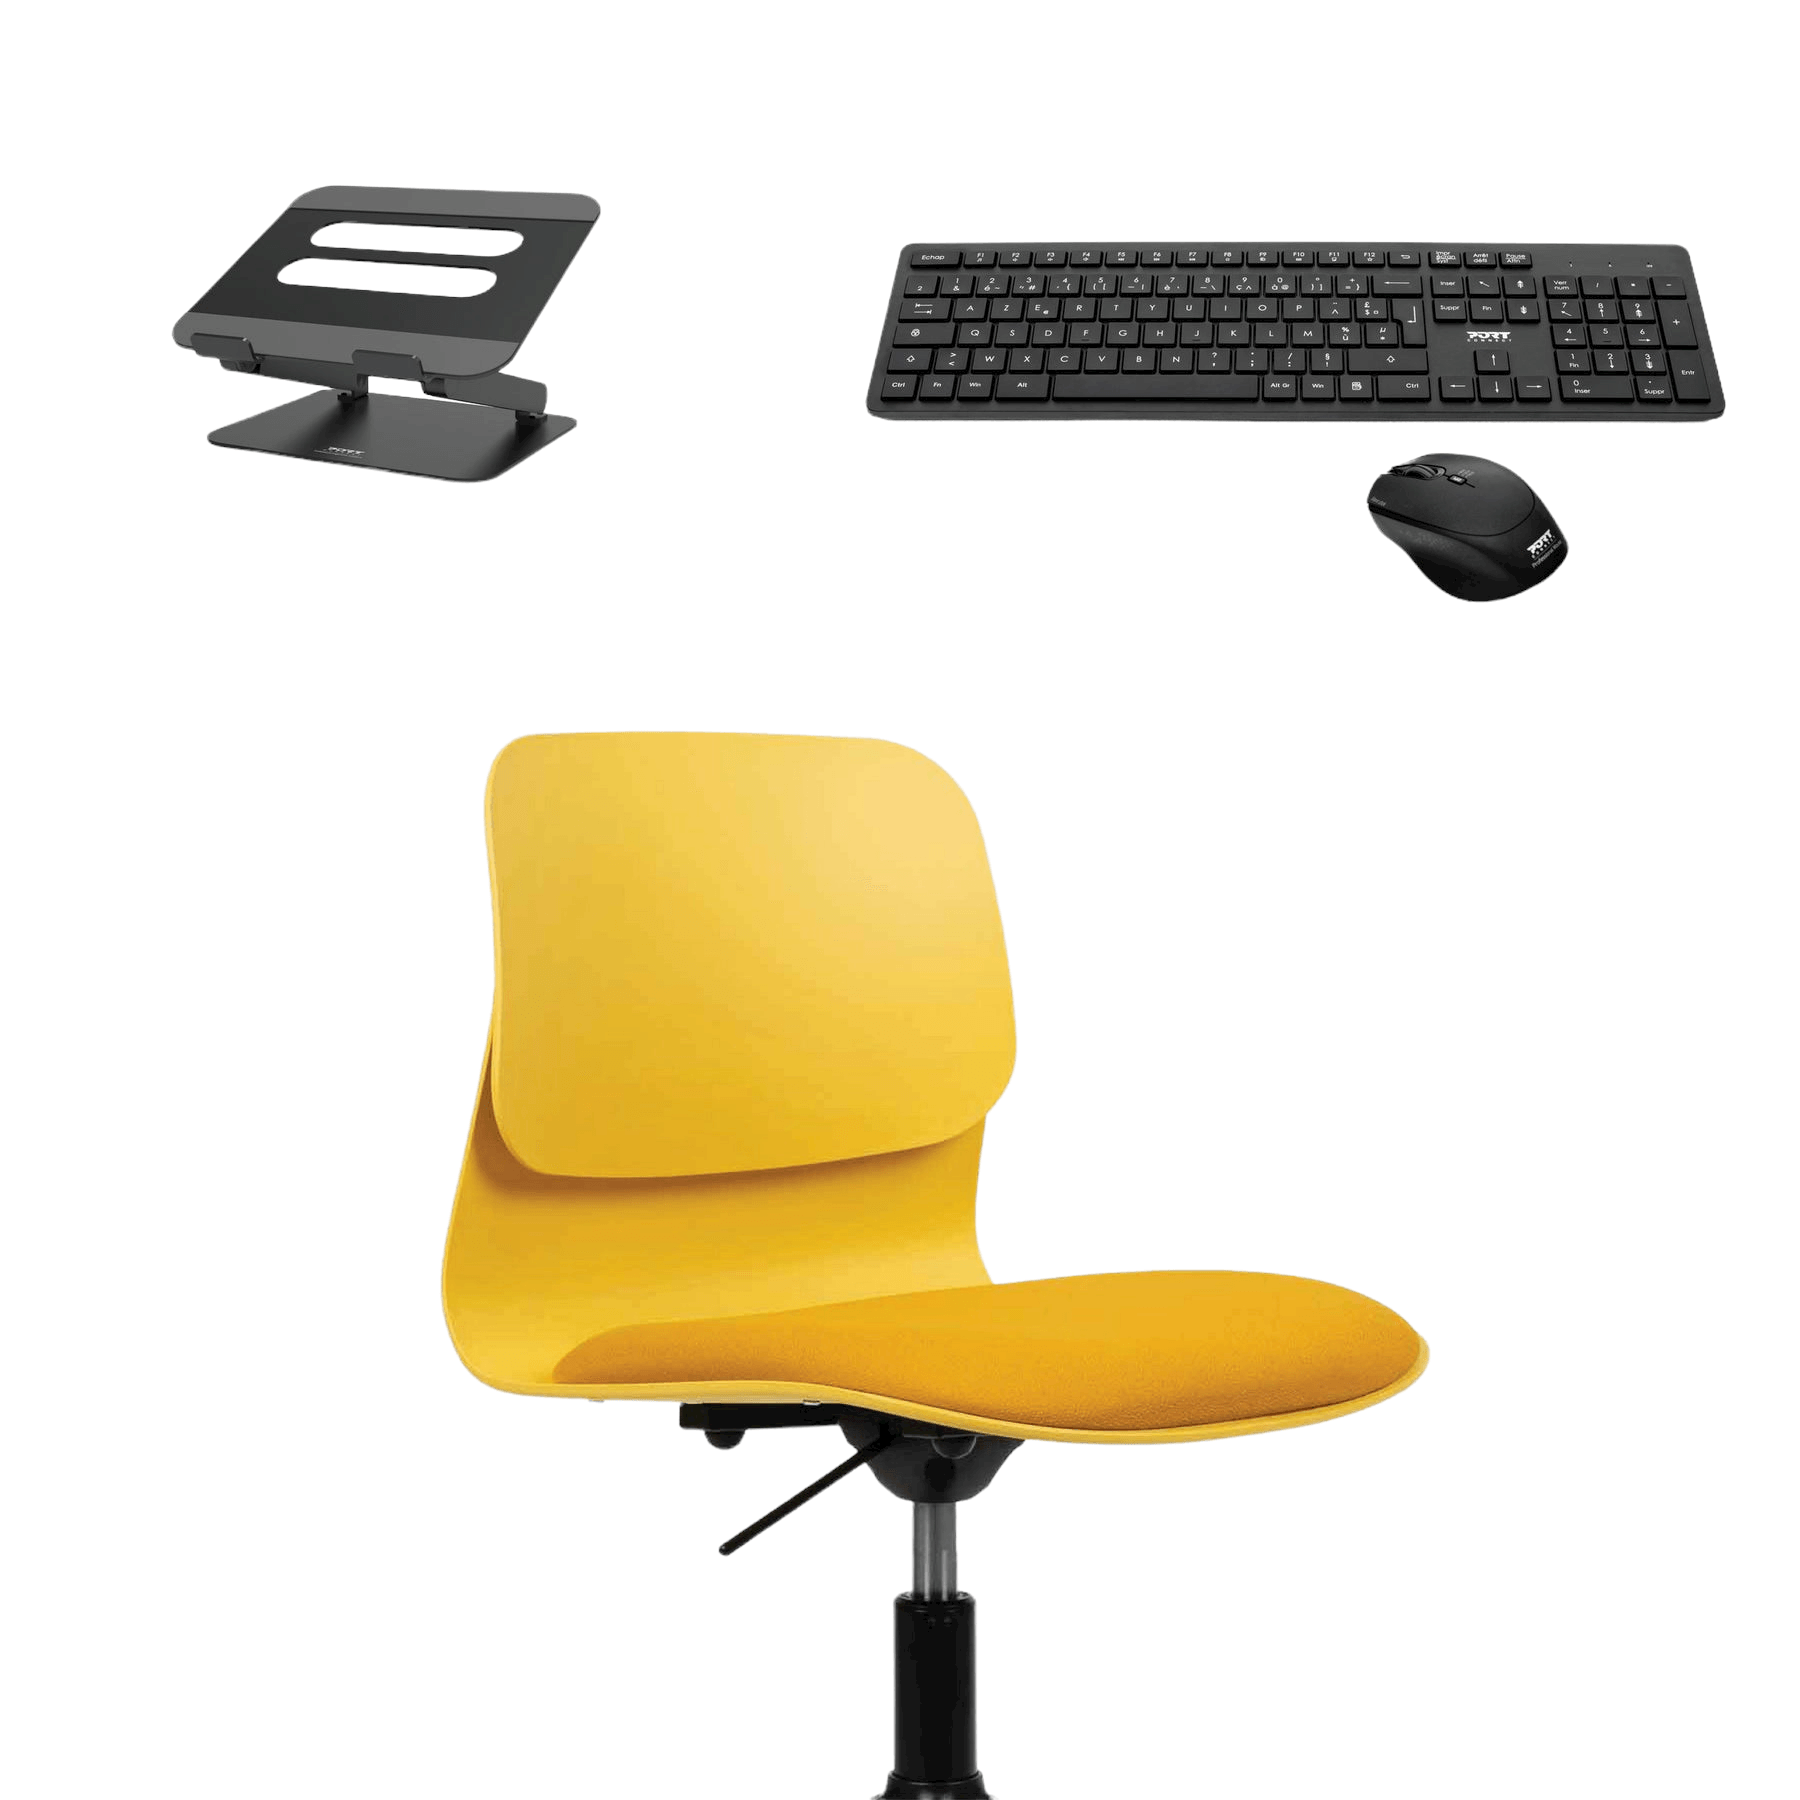 Chaise Design ergonomique & Kit essentiels télétravail - 37+ Design